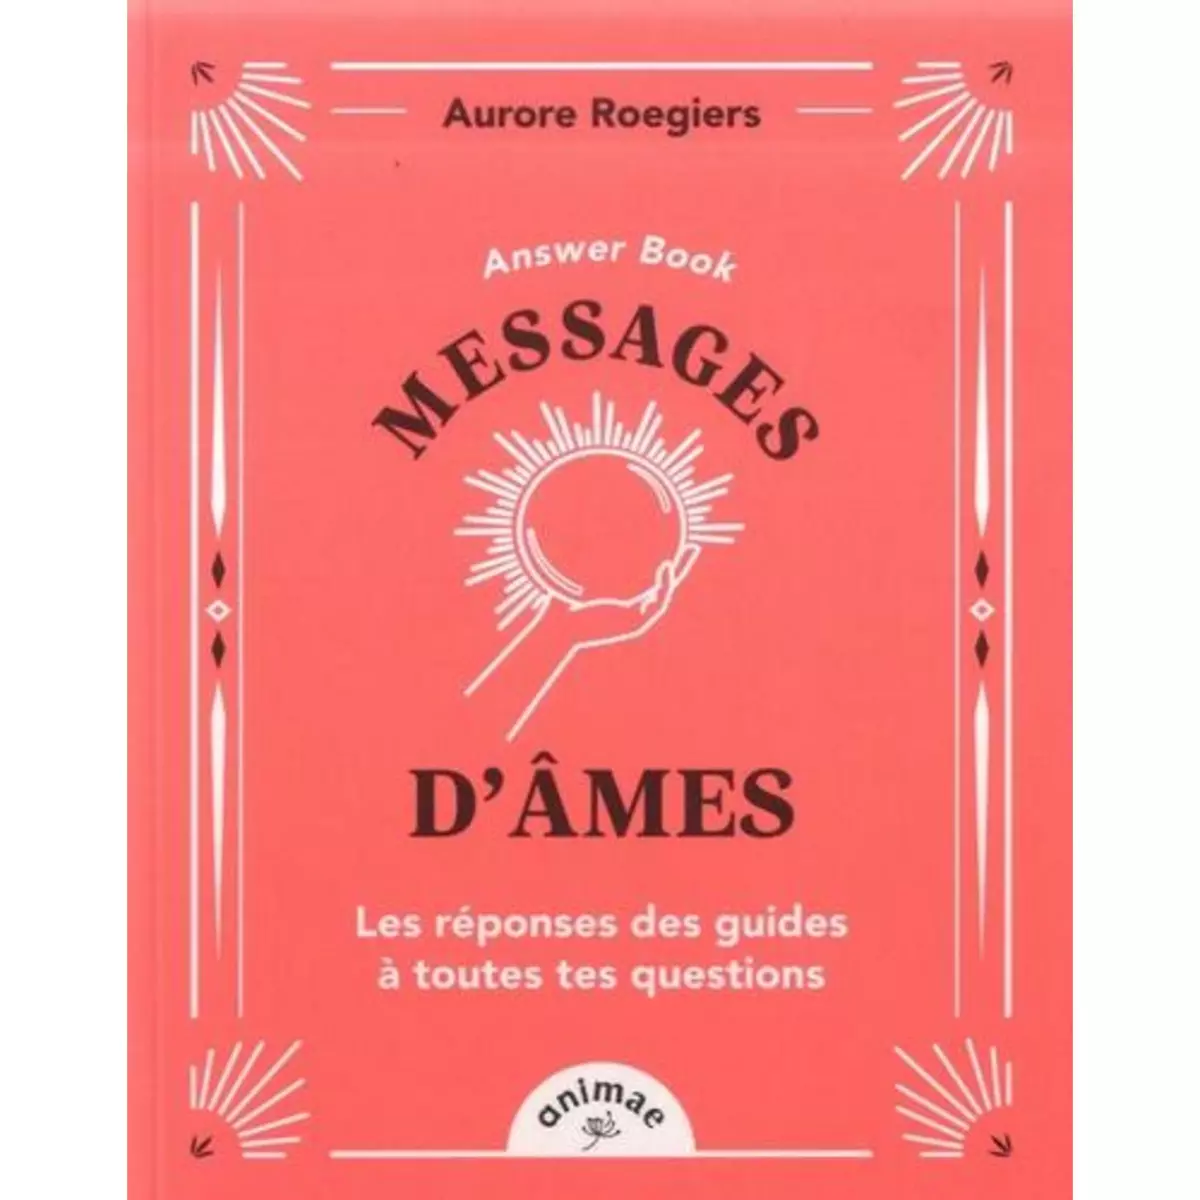  MESSAGES D'AMES. LES REPONSES DES GUIDES A TOUTES TES QUESTIONS, Roegiers Aurore